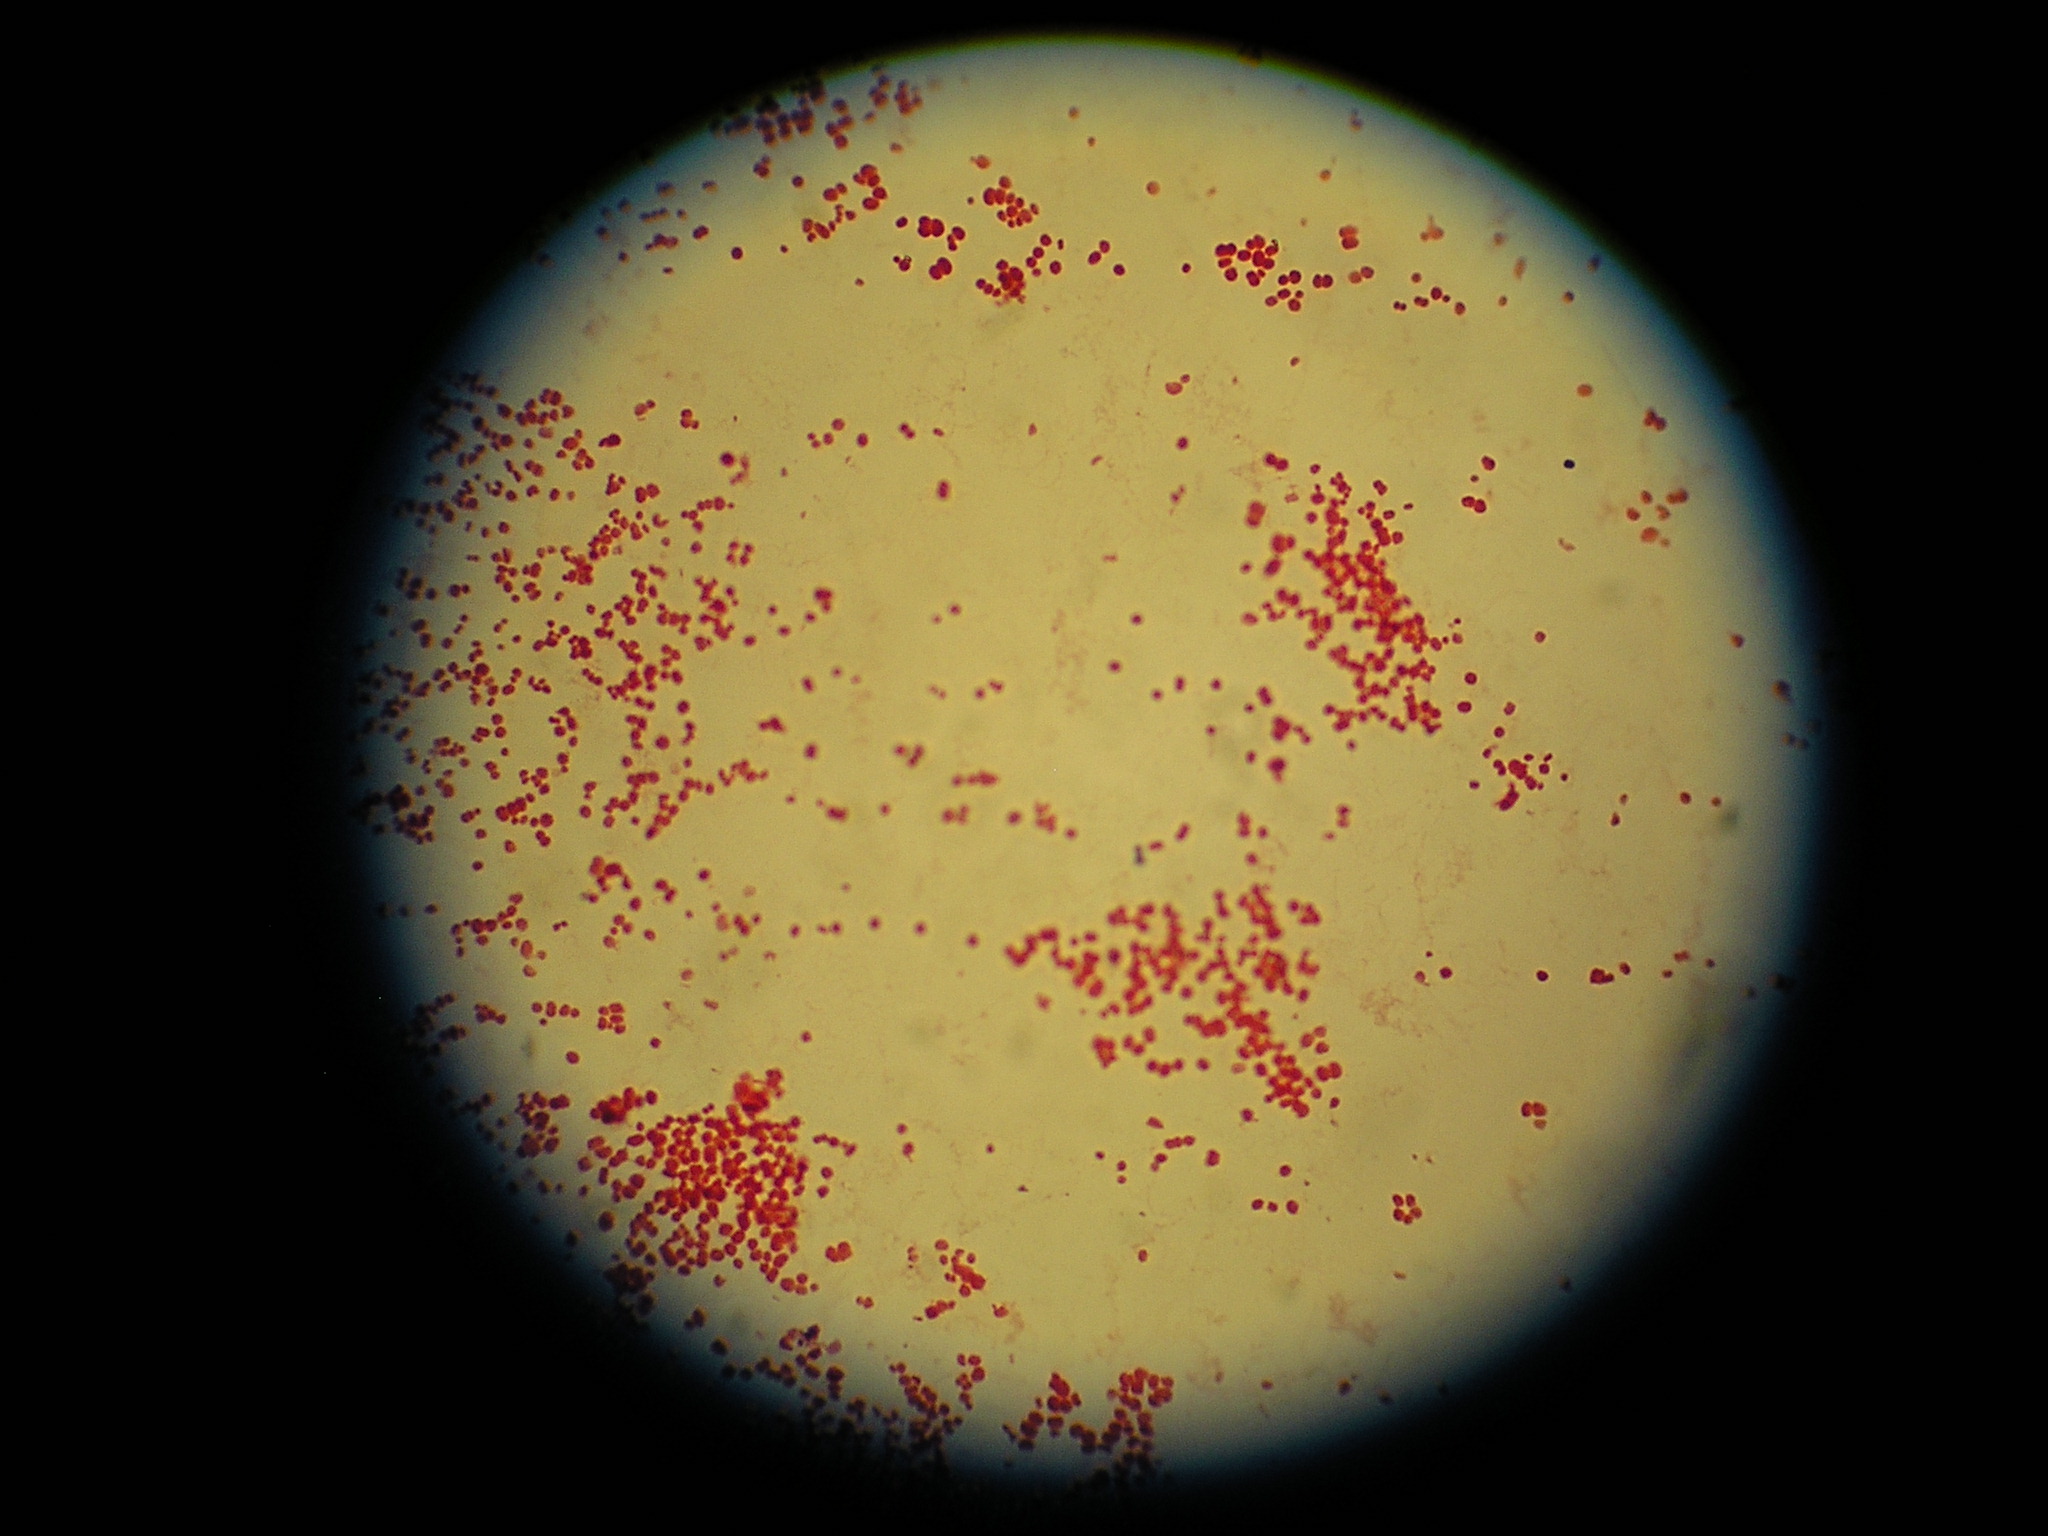 Gram negatieve coccen gezien door de microscoop	